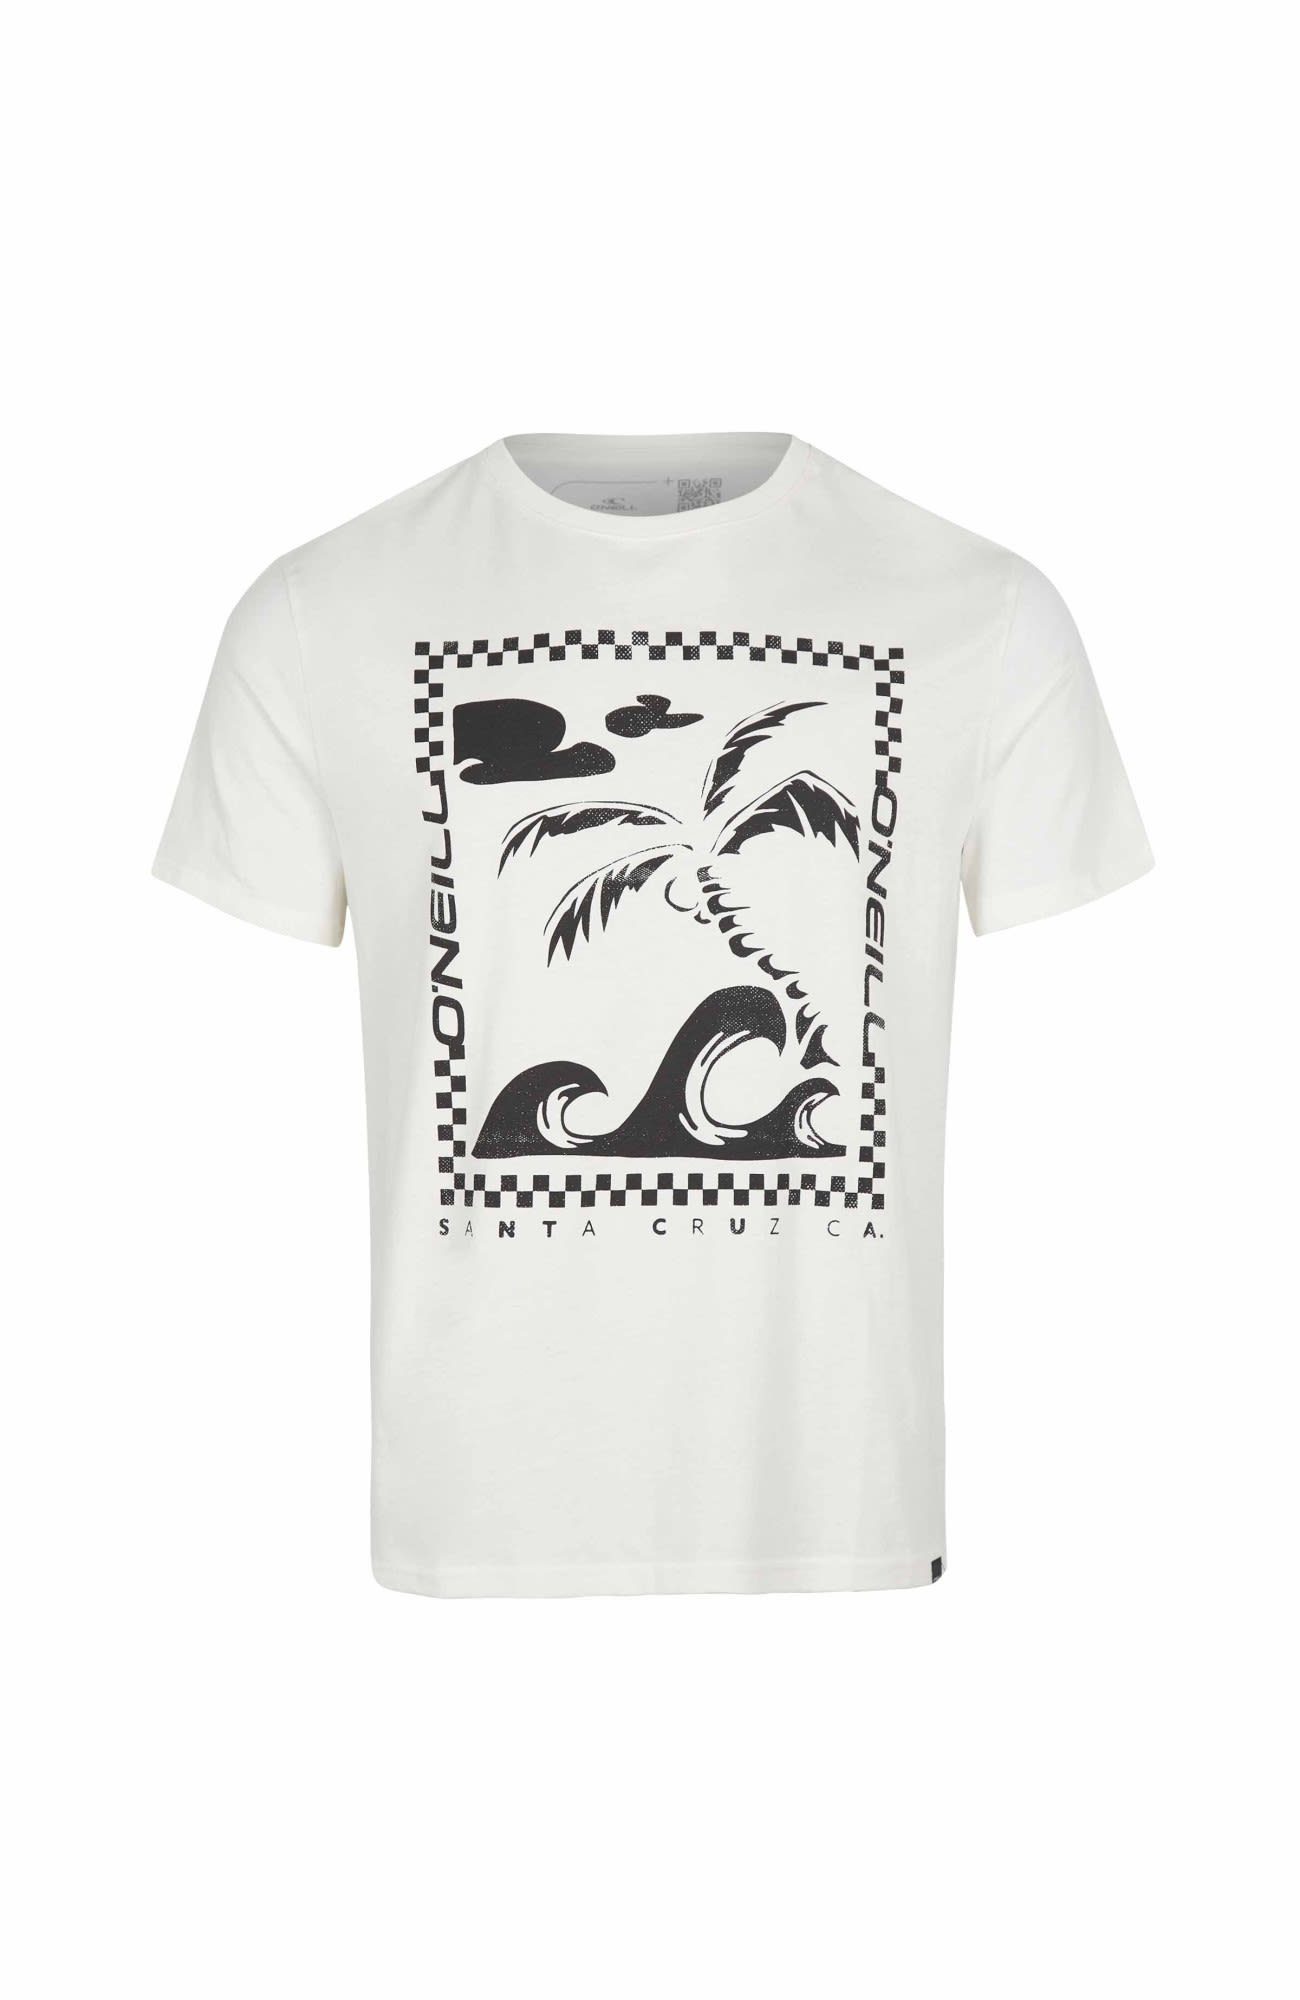 Fin Kurzarm-Shirt Snow Oneill T-shirt White M O'Neill T-Shirt Herren